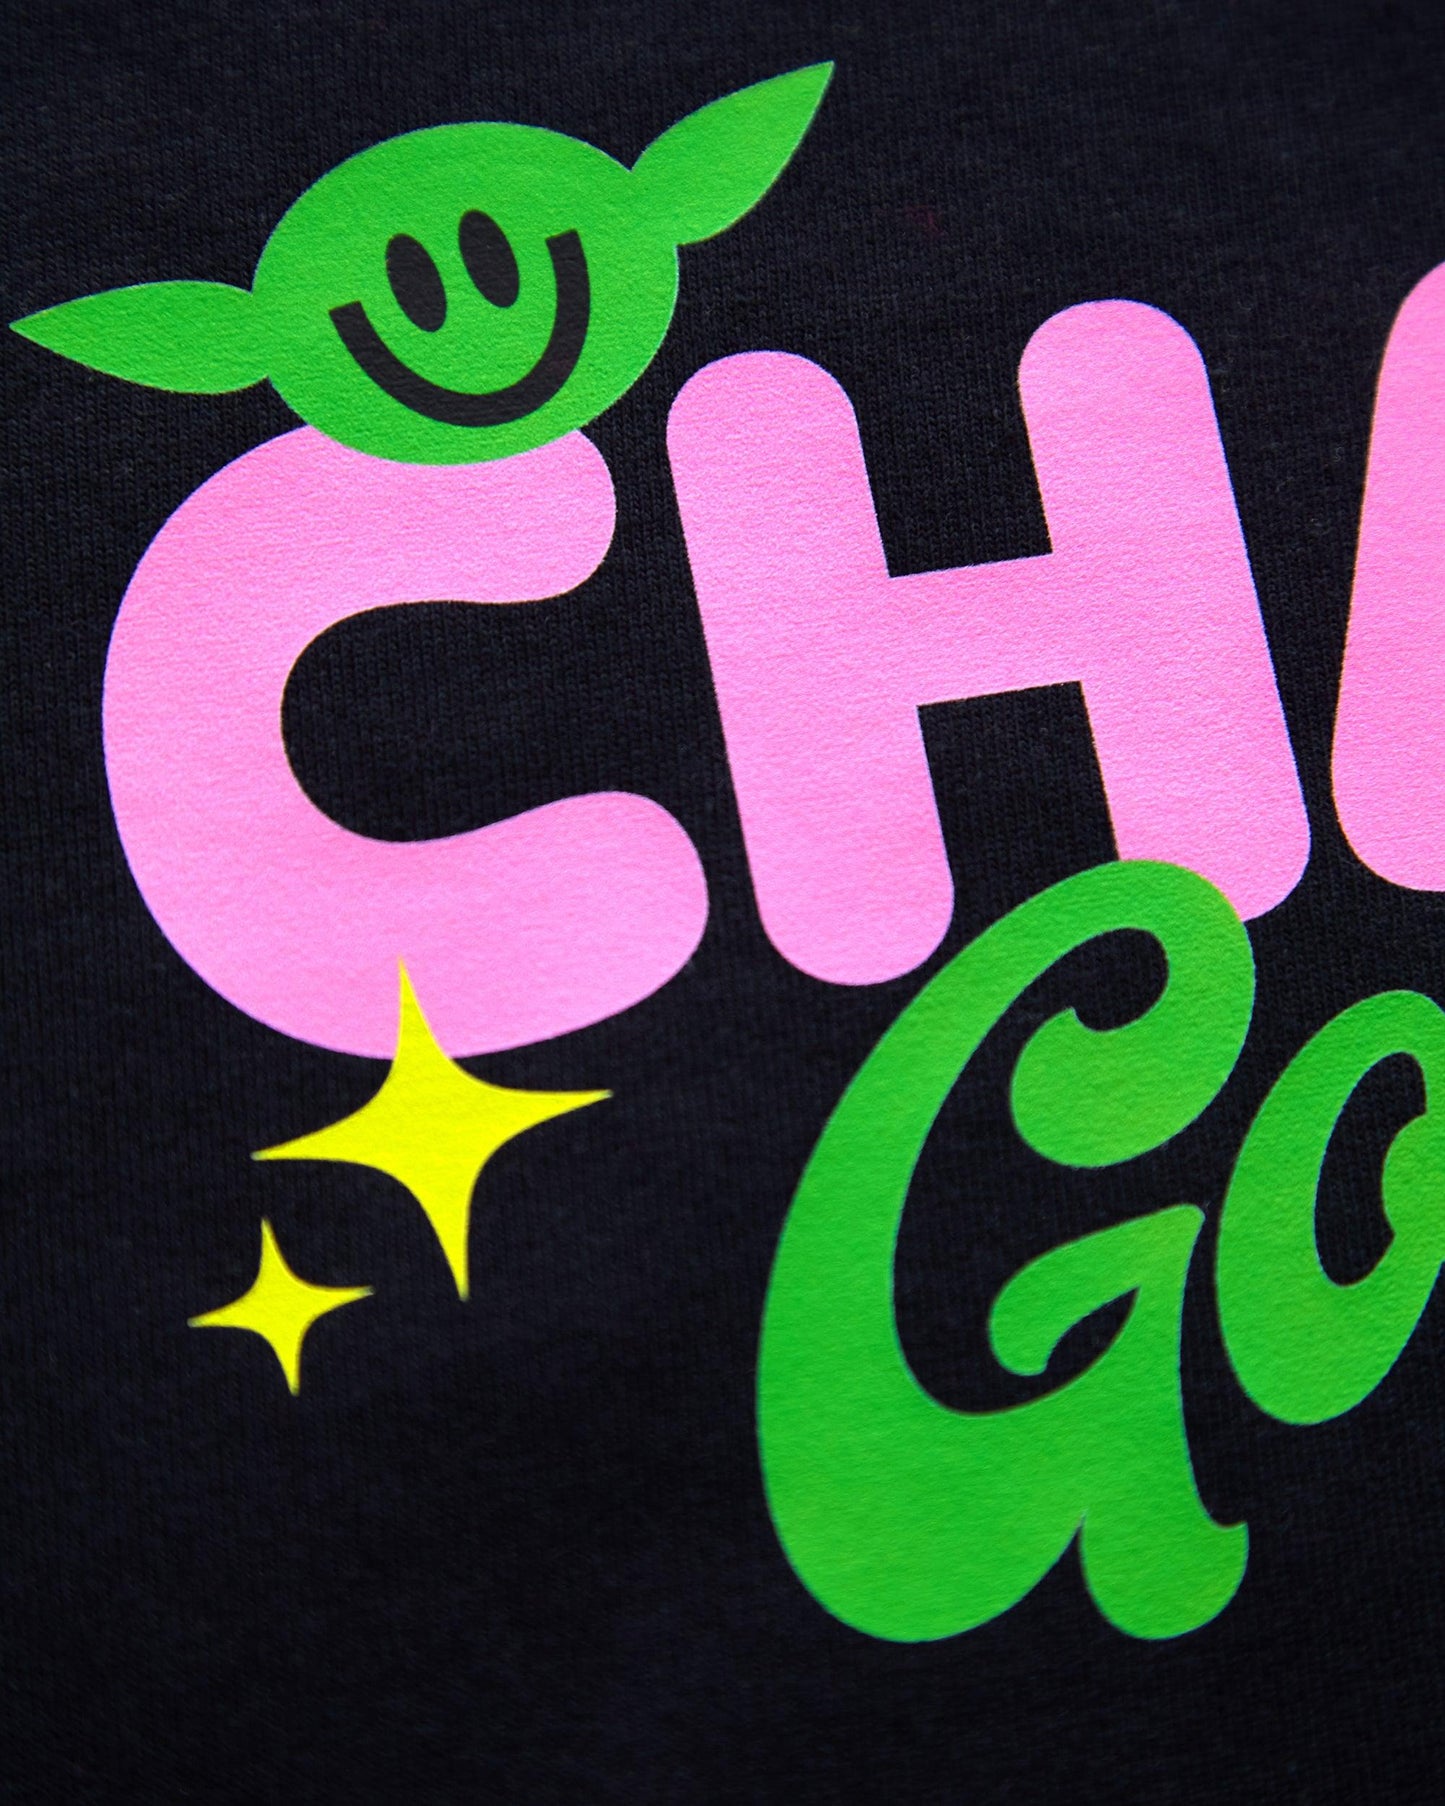 Chaos goblin - men's cropped tshirt / crop top - HOMOLONDON